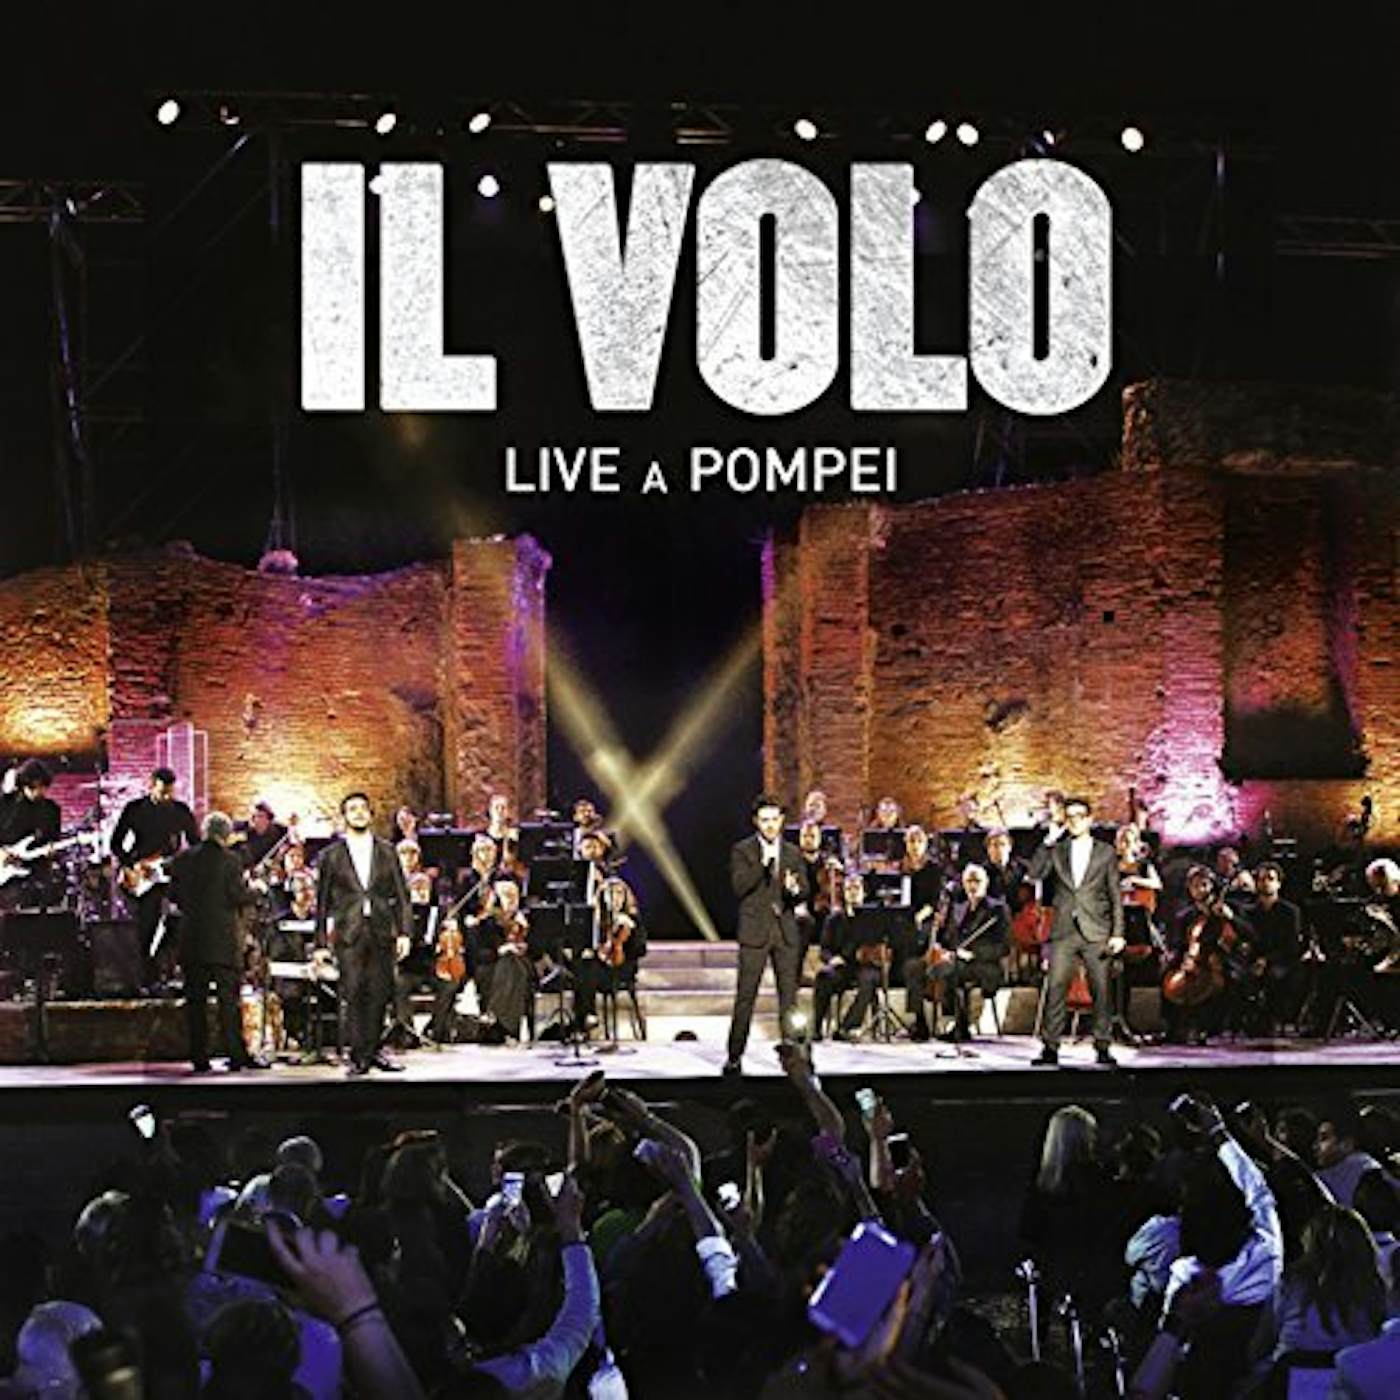 Il Volo LIVE A POMPEI CD